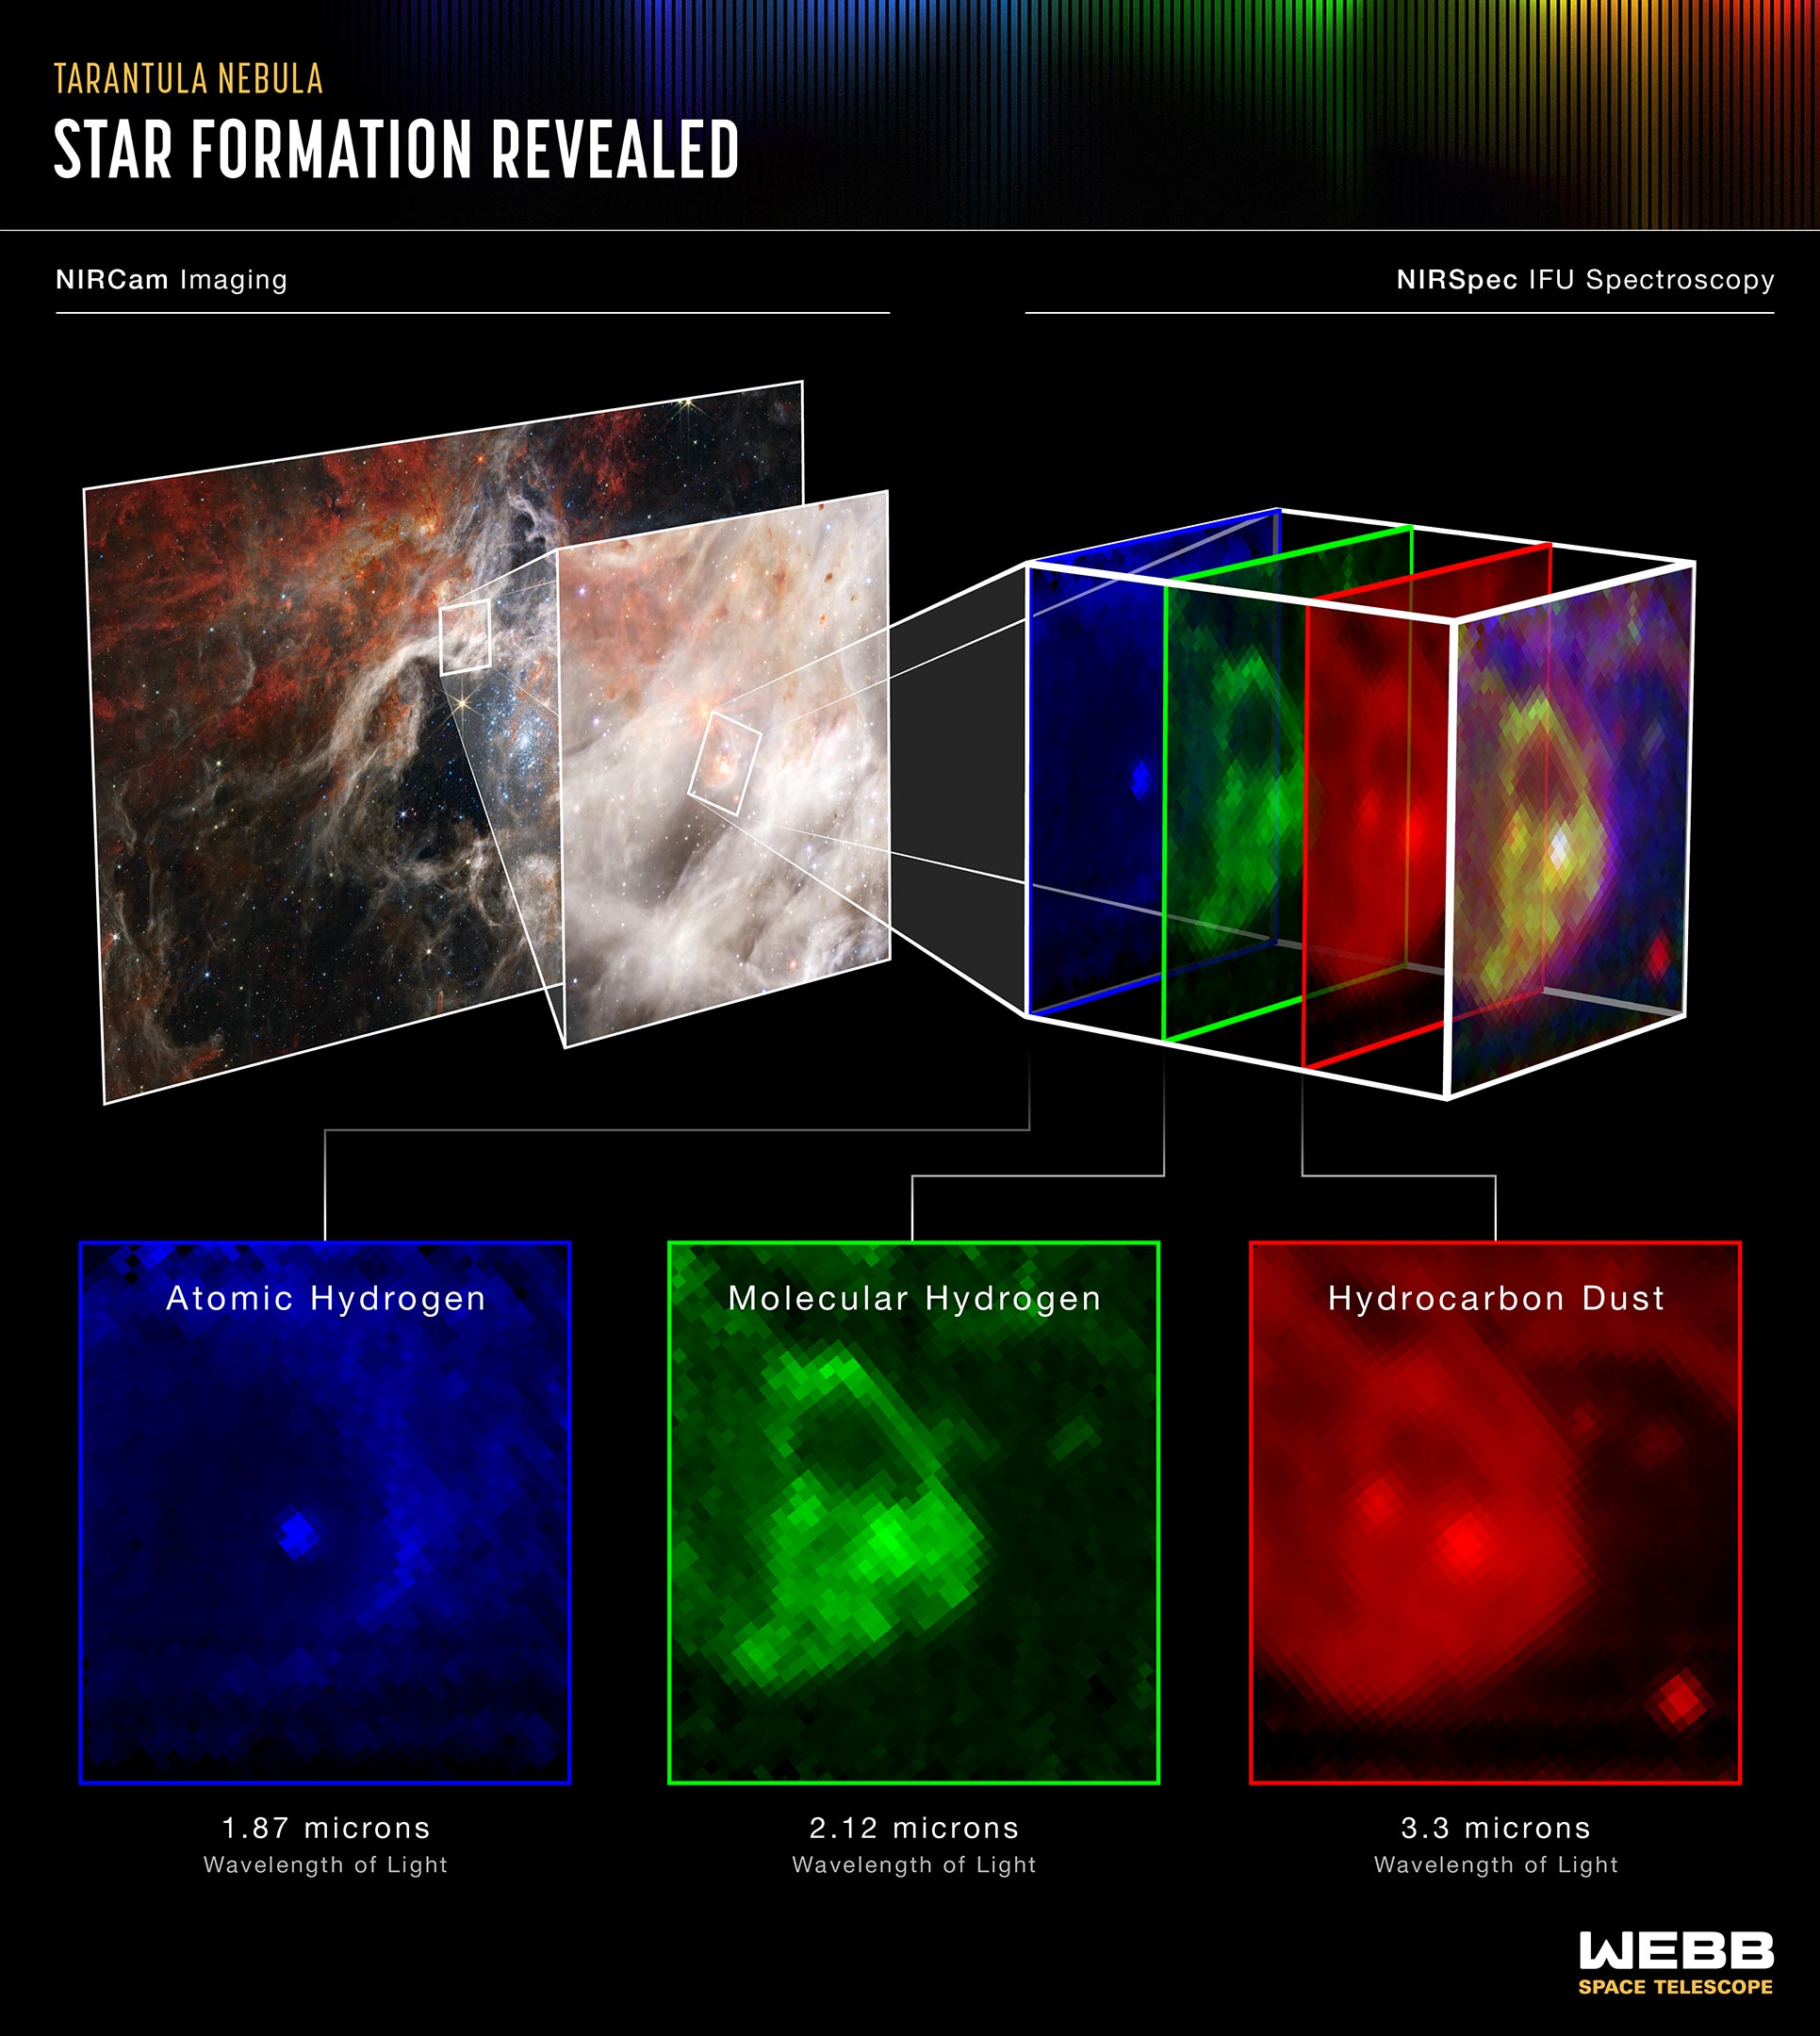 El espectrógrafo de infrarrojo cercano de Webb (NIRSpec) revela lo que realmente está sucediendo en una región fascinante de la Nebulosa de la Tarántula (NASA)